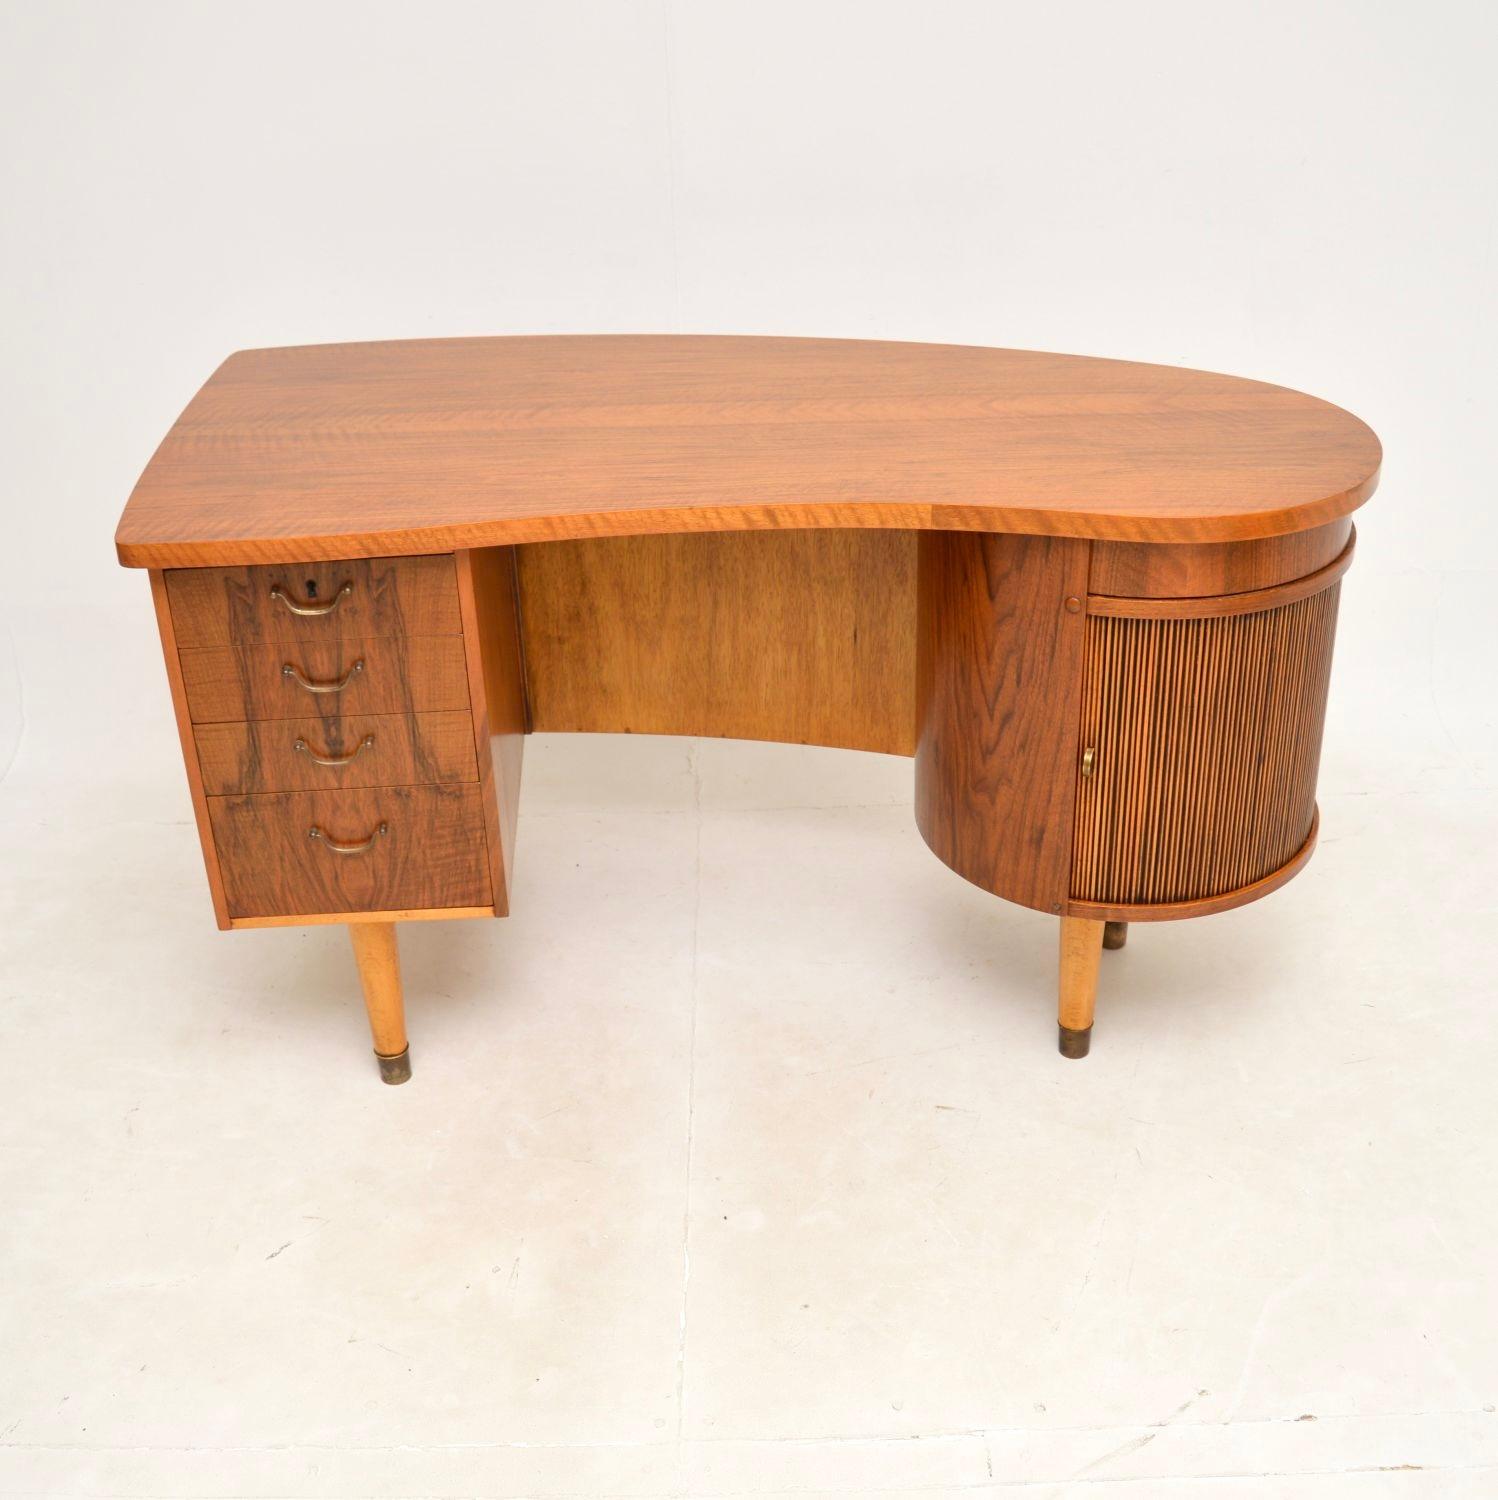 Ein absolut spektakulärer dänischer Schreibtisch aus Nussbaumholz von Kai Kristiansen. Dies ist das Modell 54, ein Schreibtisch, der in den 1950er Jahren in Dänemark hergestellt wurde.

Es ist von erstaunlicher Qualität und hat ein unglaubliches